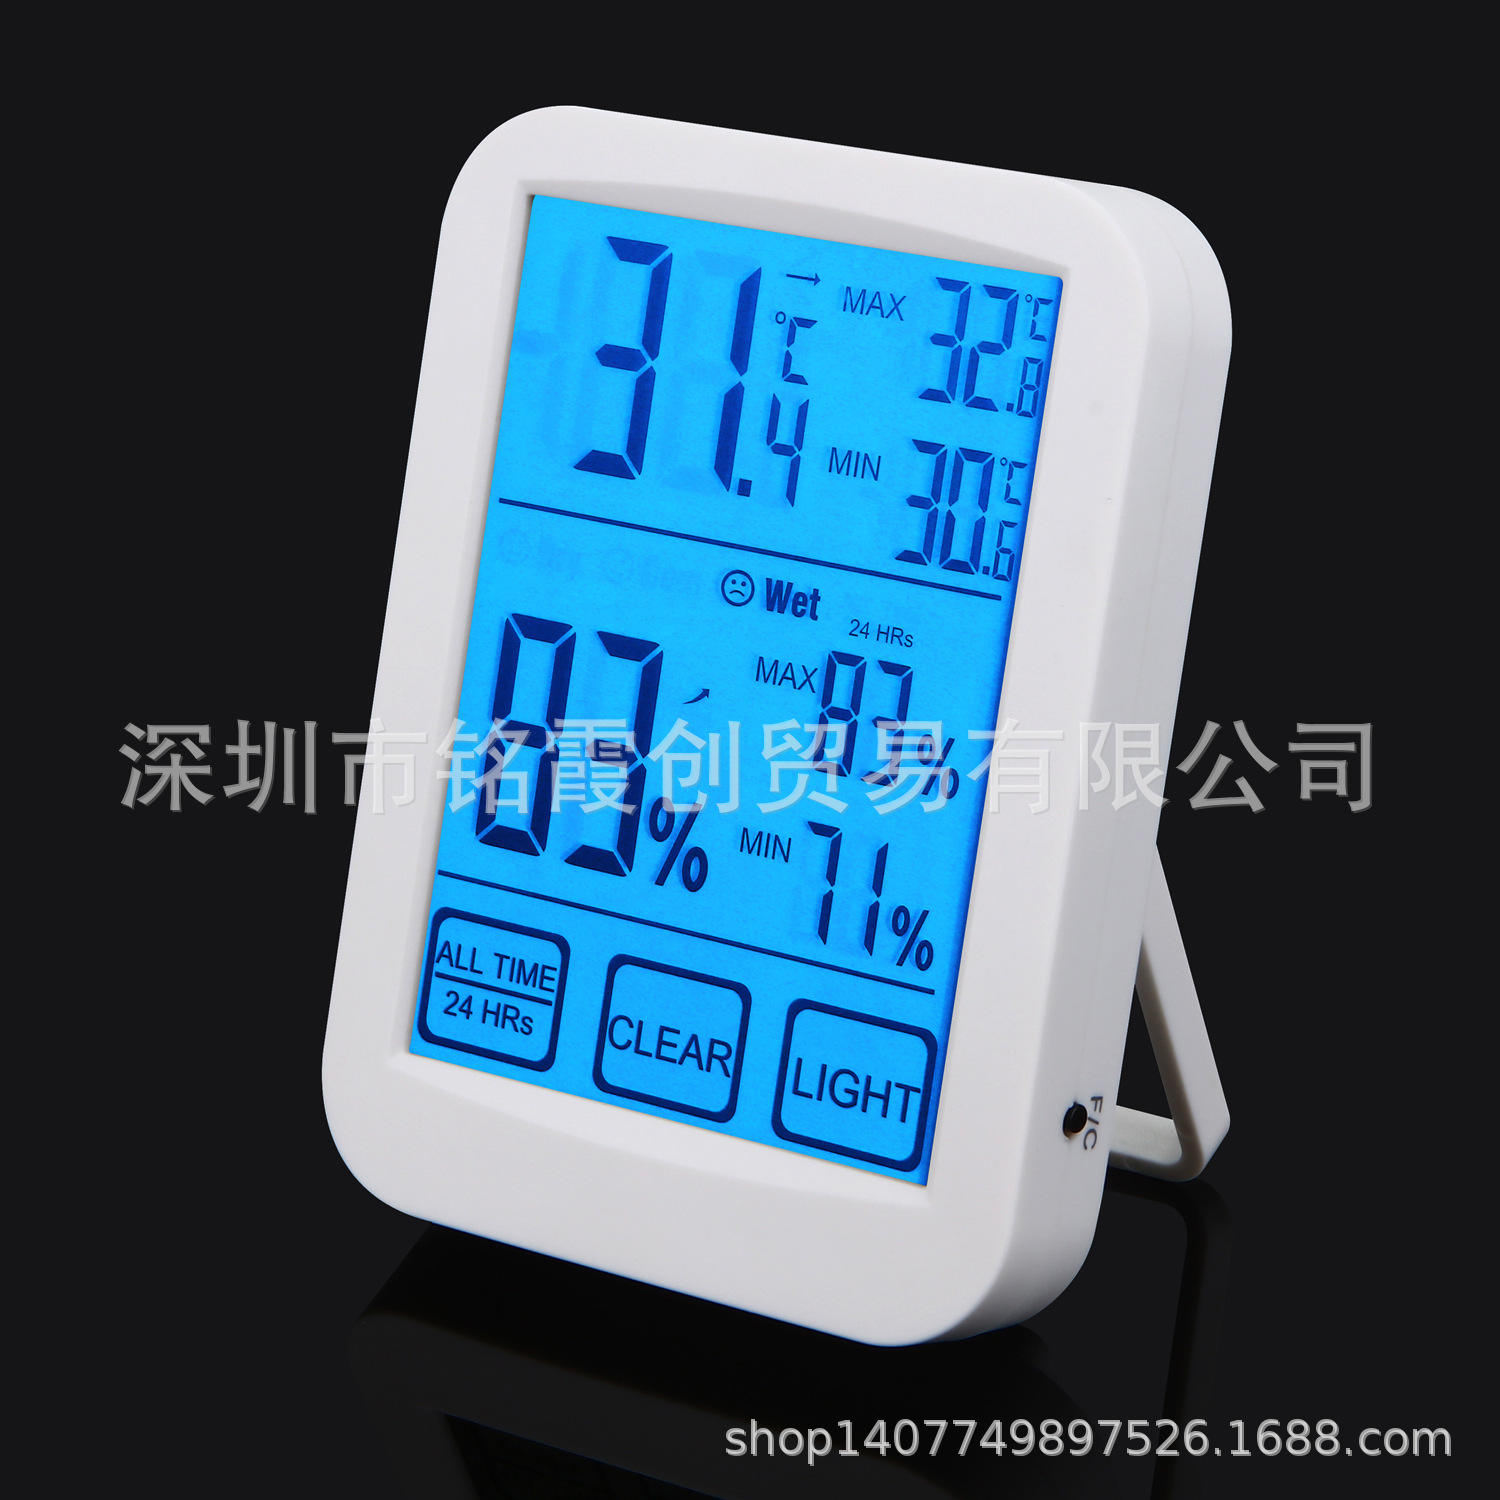 新品屏触摸电子温湿度计 家用室内温度表 湿度仪 同屏显示高低值